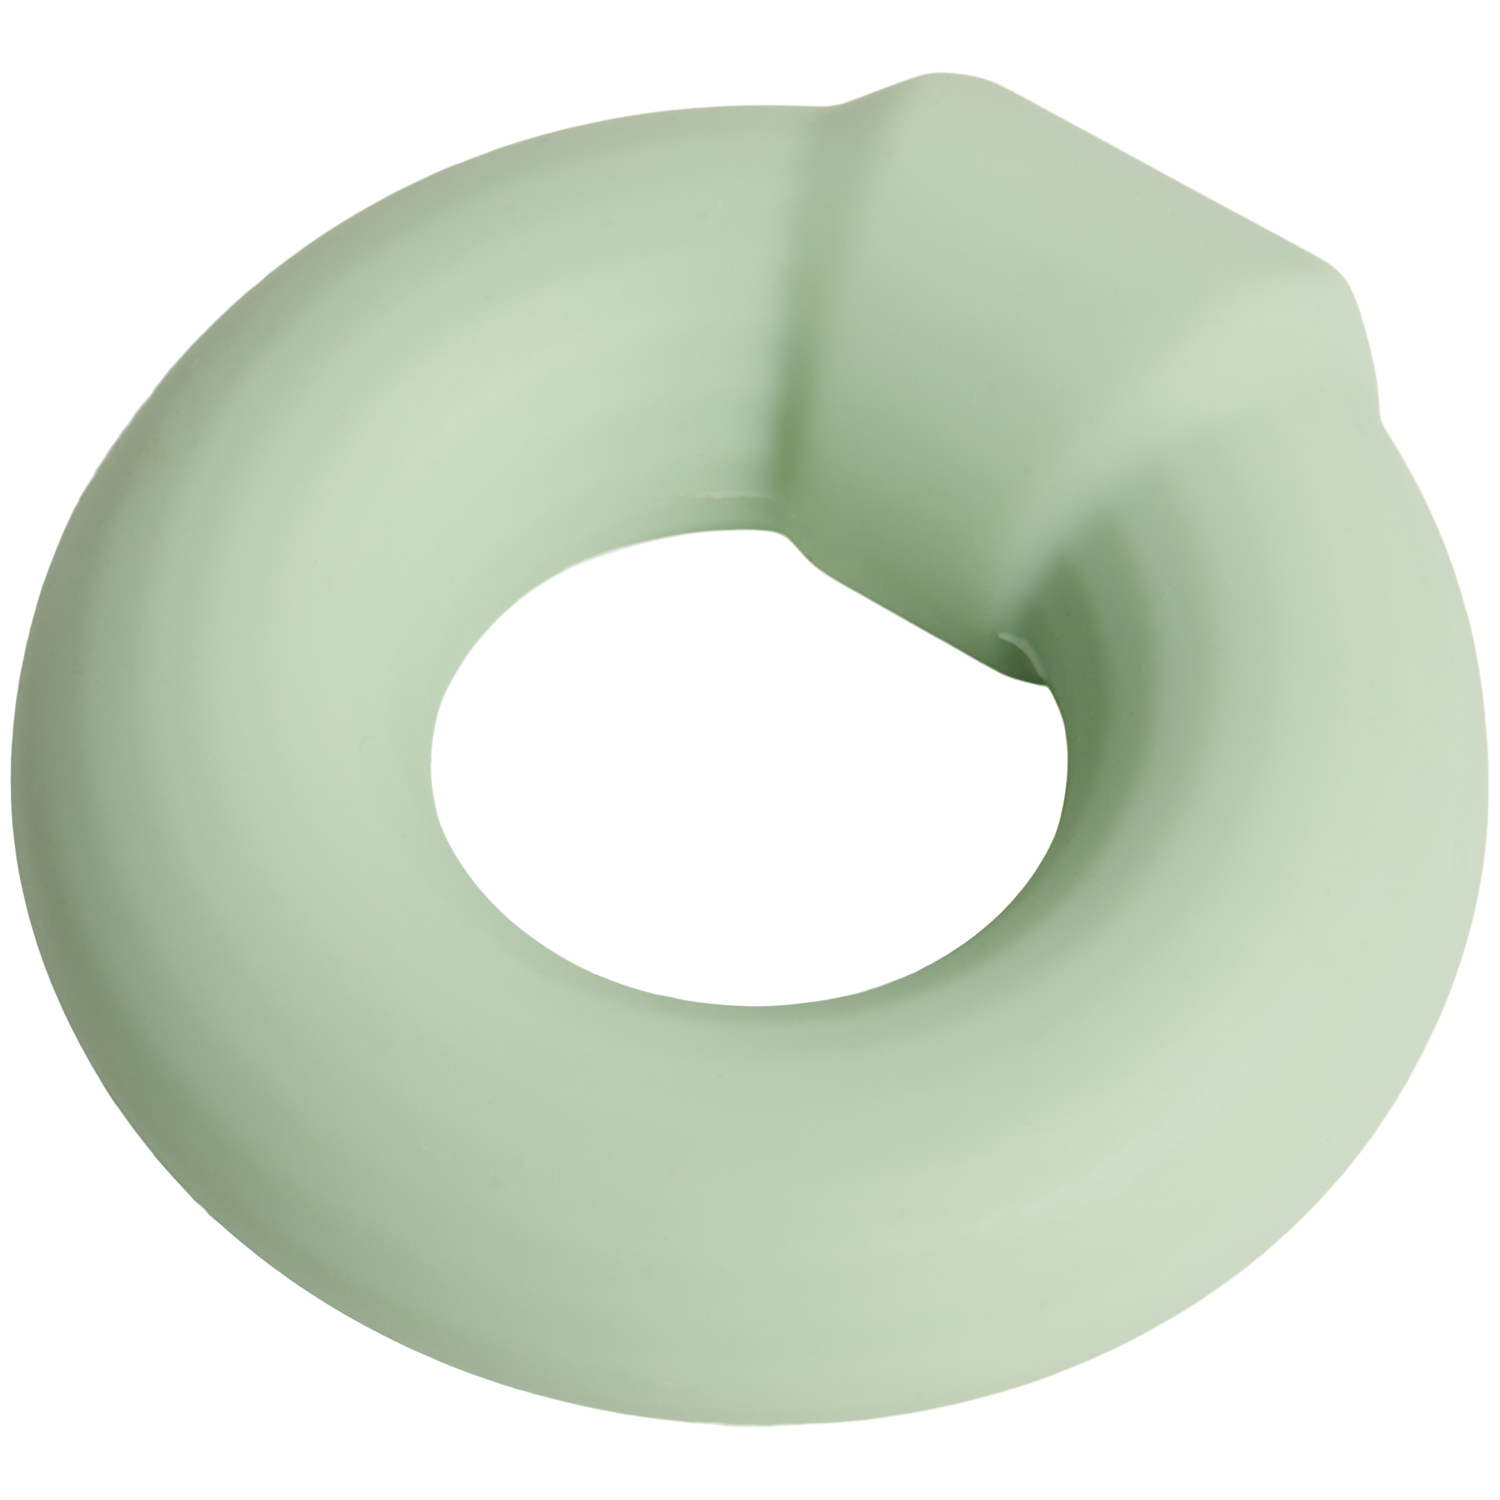 Sinful Pro Matcha Green Stretchy Silikon Penisring - Grön | Penisringar//Män//Favoriter//Par//Flexibel Penisring//REA för Män//REA för Par//Par Sexleksaker//Sinful//Nyheter//Sinful för Män//Penisring för nybörjare | Intimast